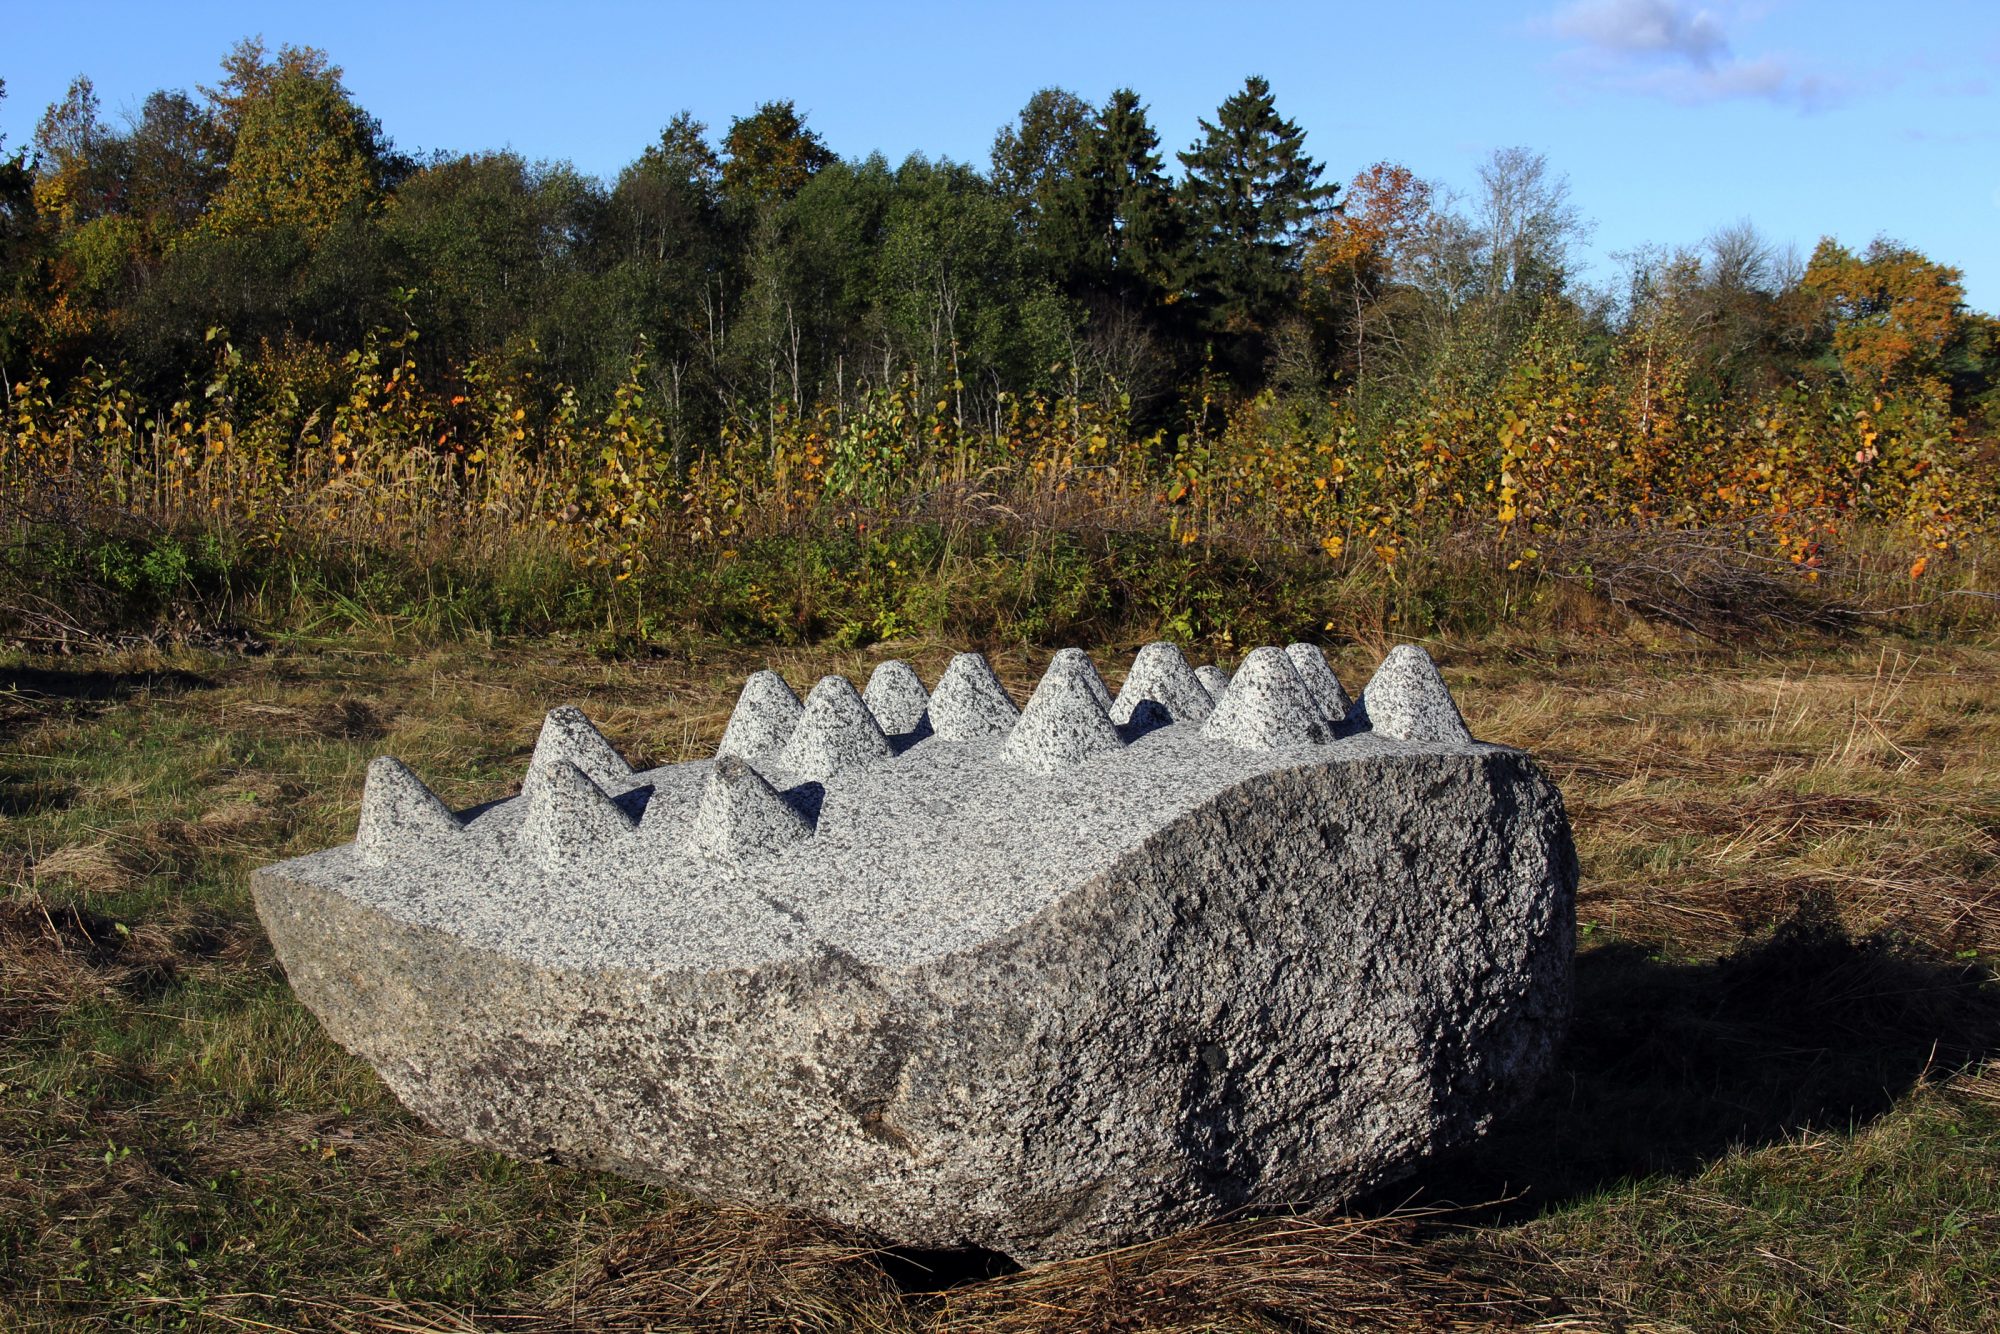 Sculpture ensemble “Landscape of Latvia”